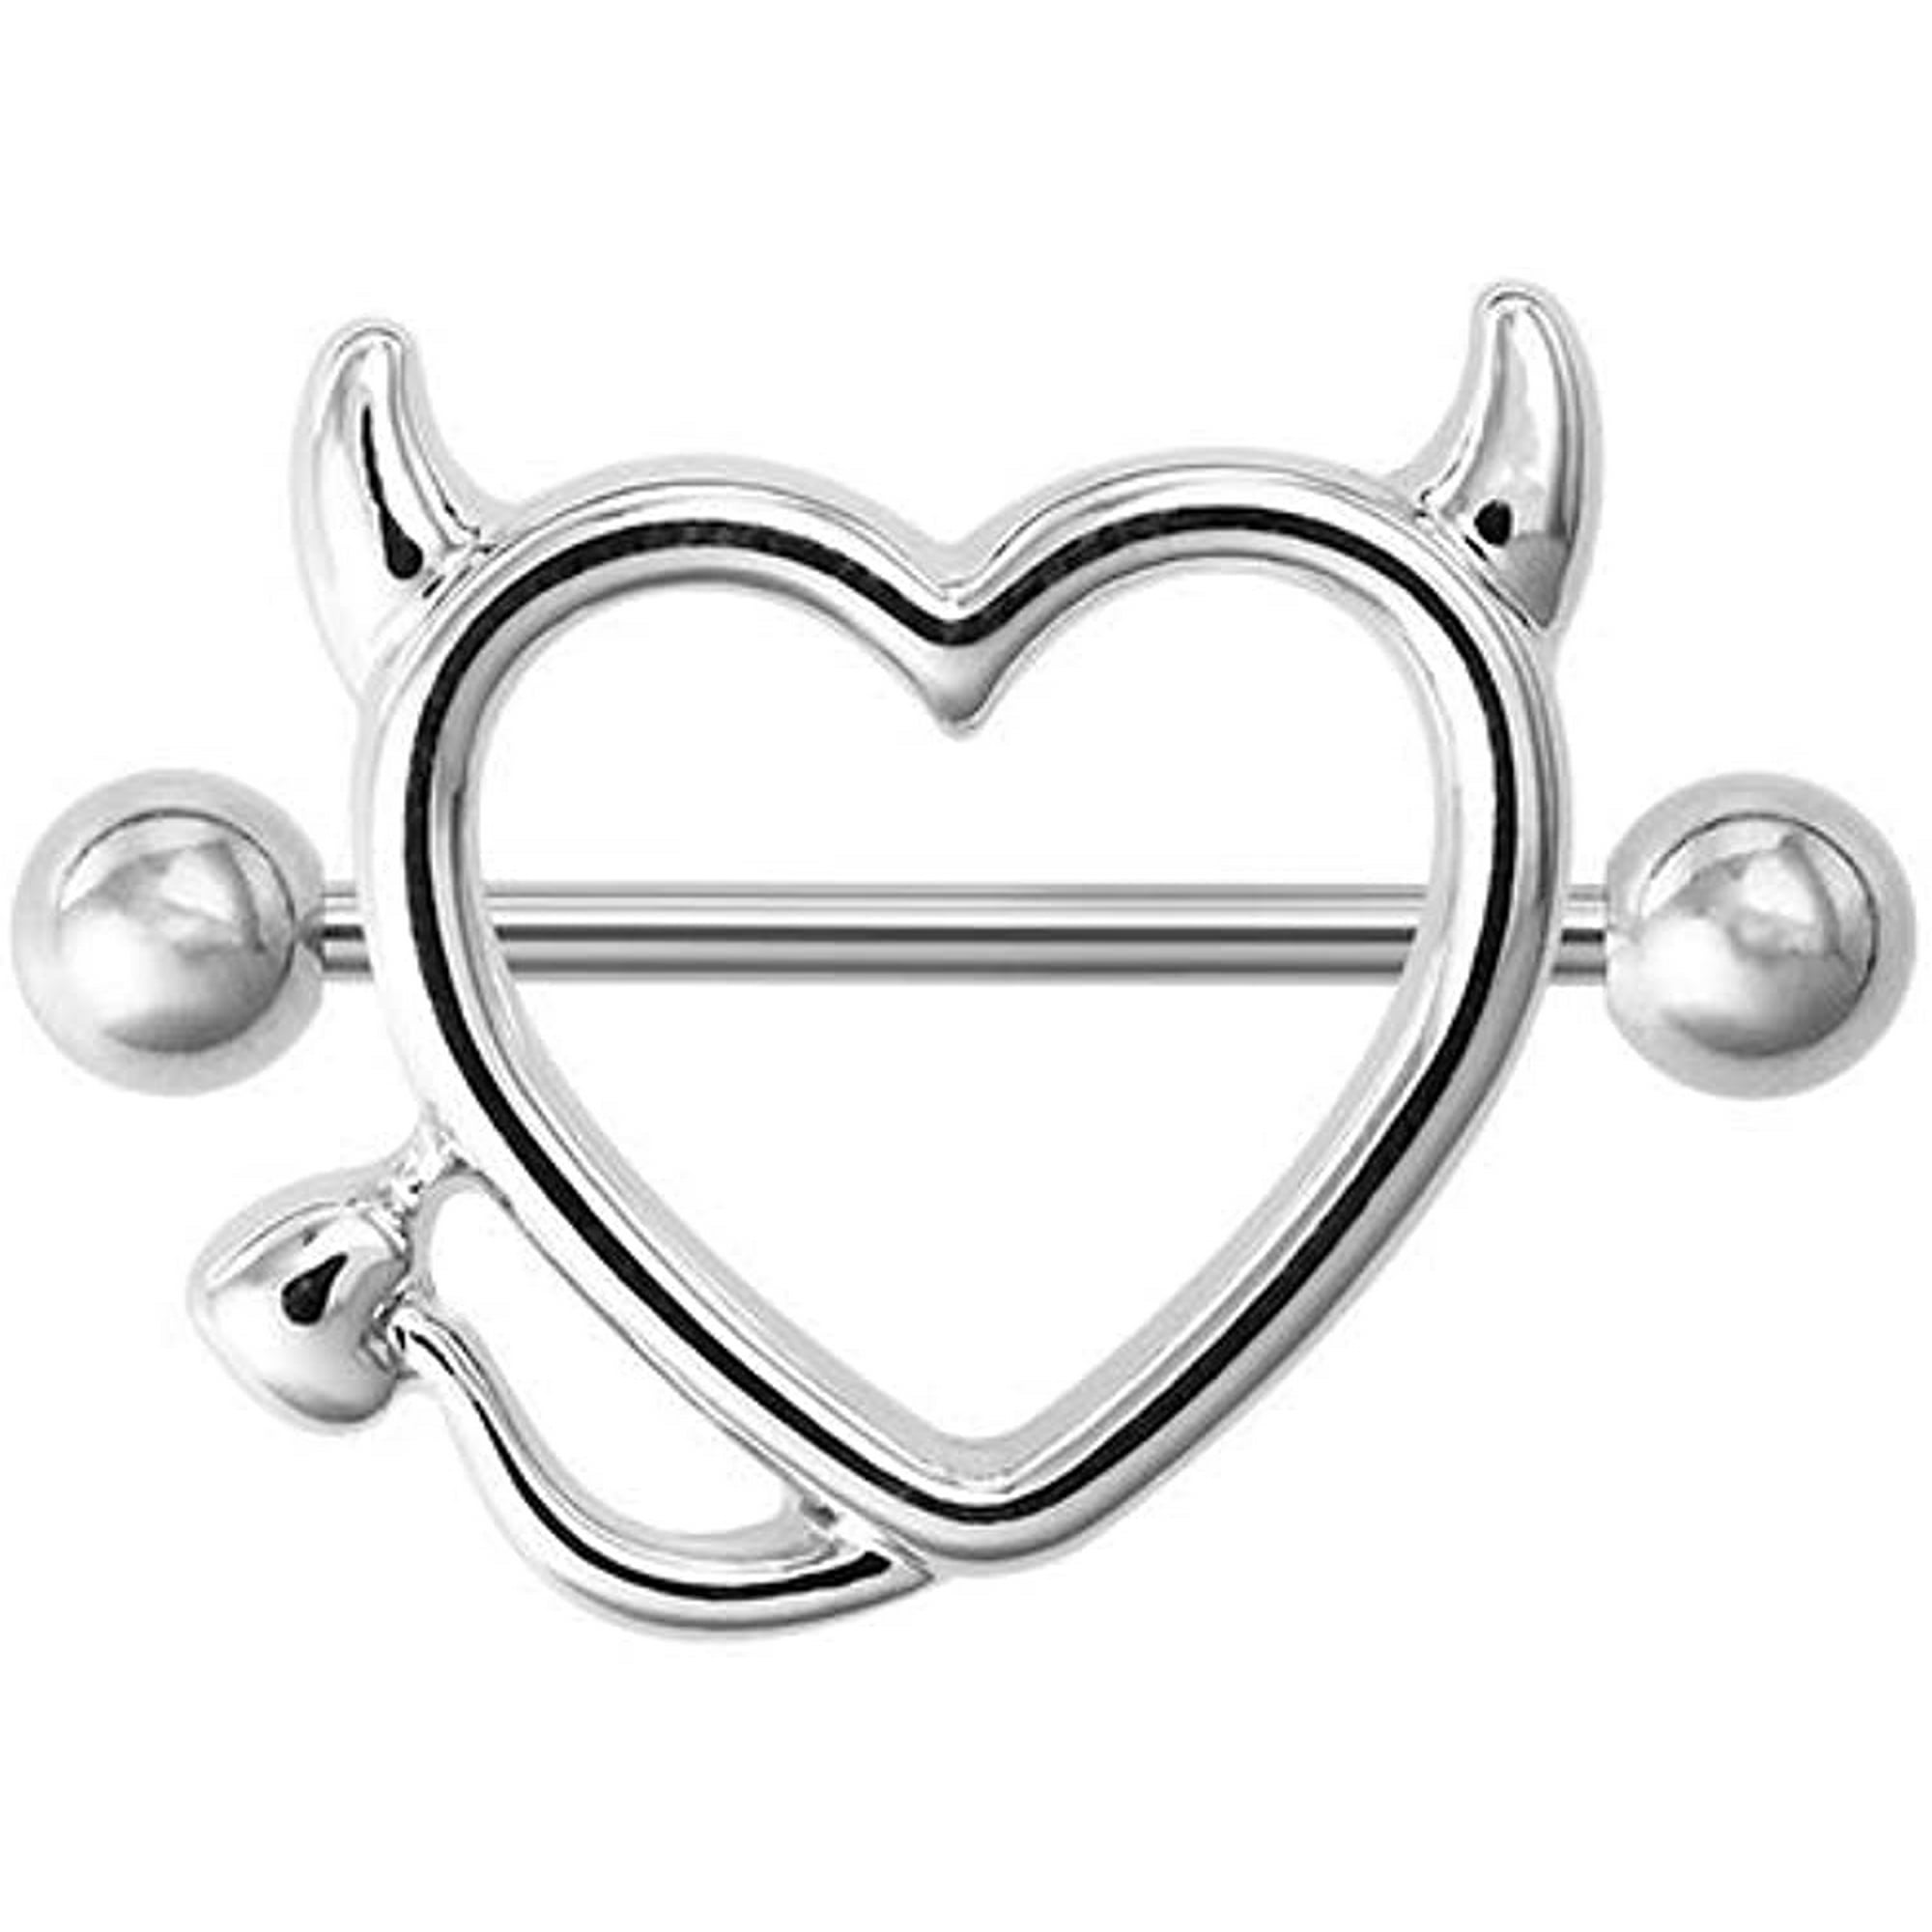 Pair 14g Stainless Steel Breast Piercing Jewelry Heart Nipple Piercing Bar Nipple Rings Shield 